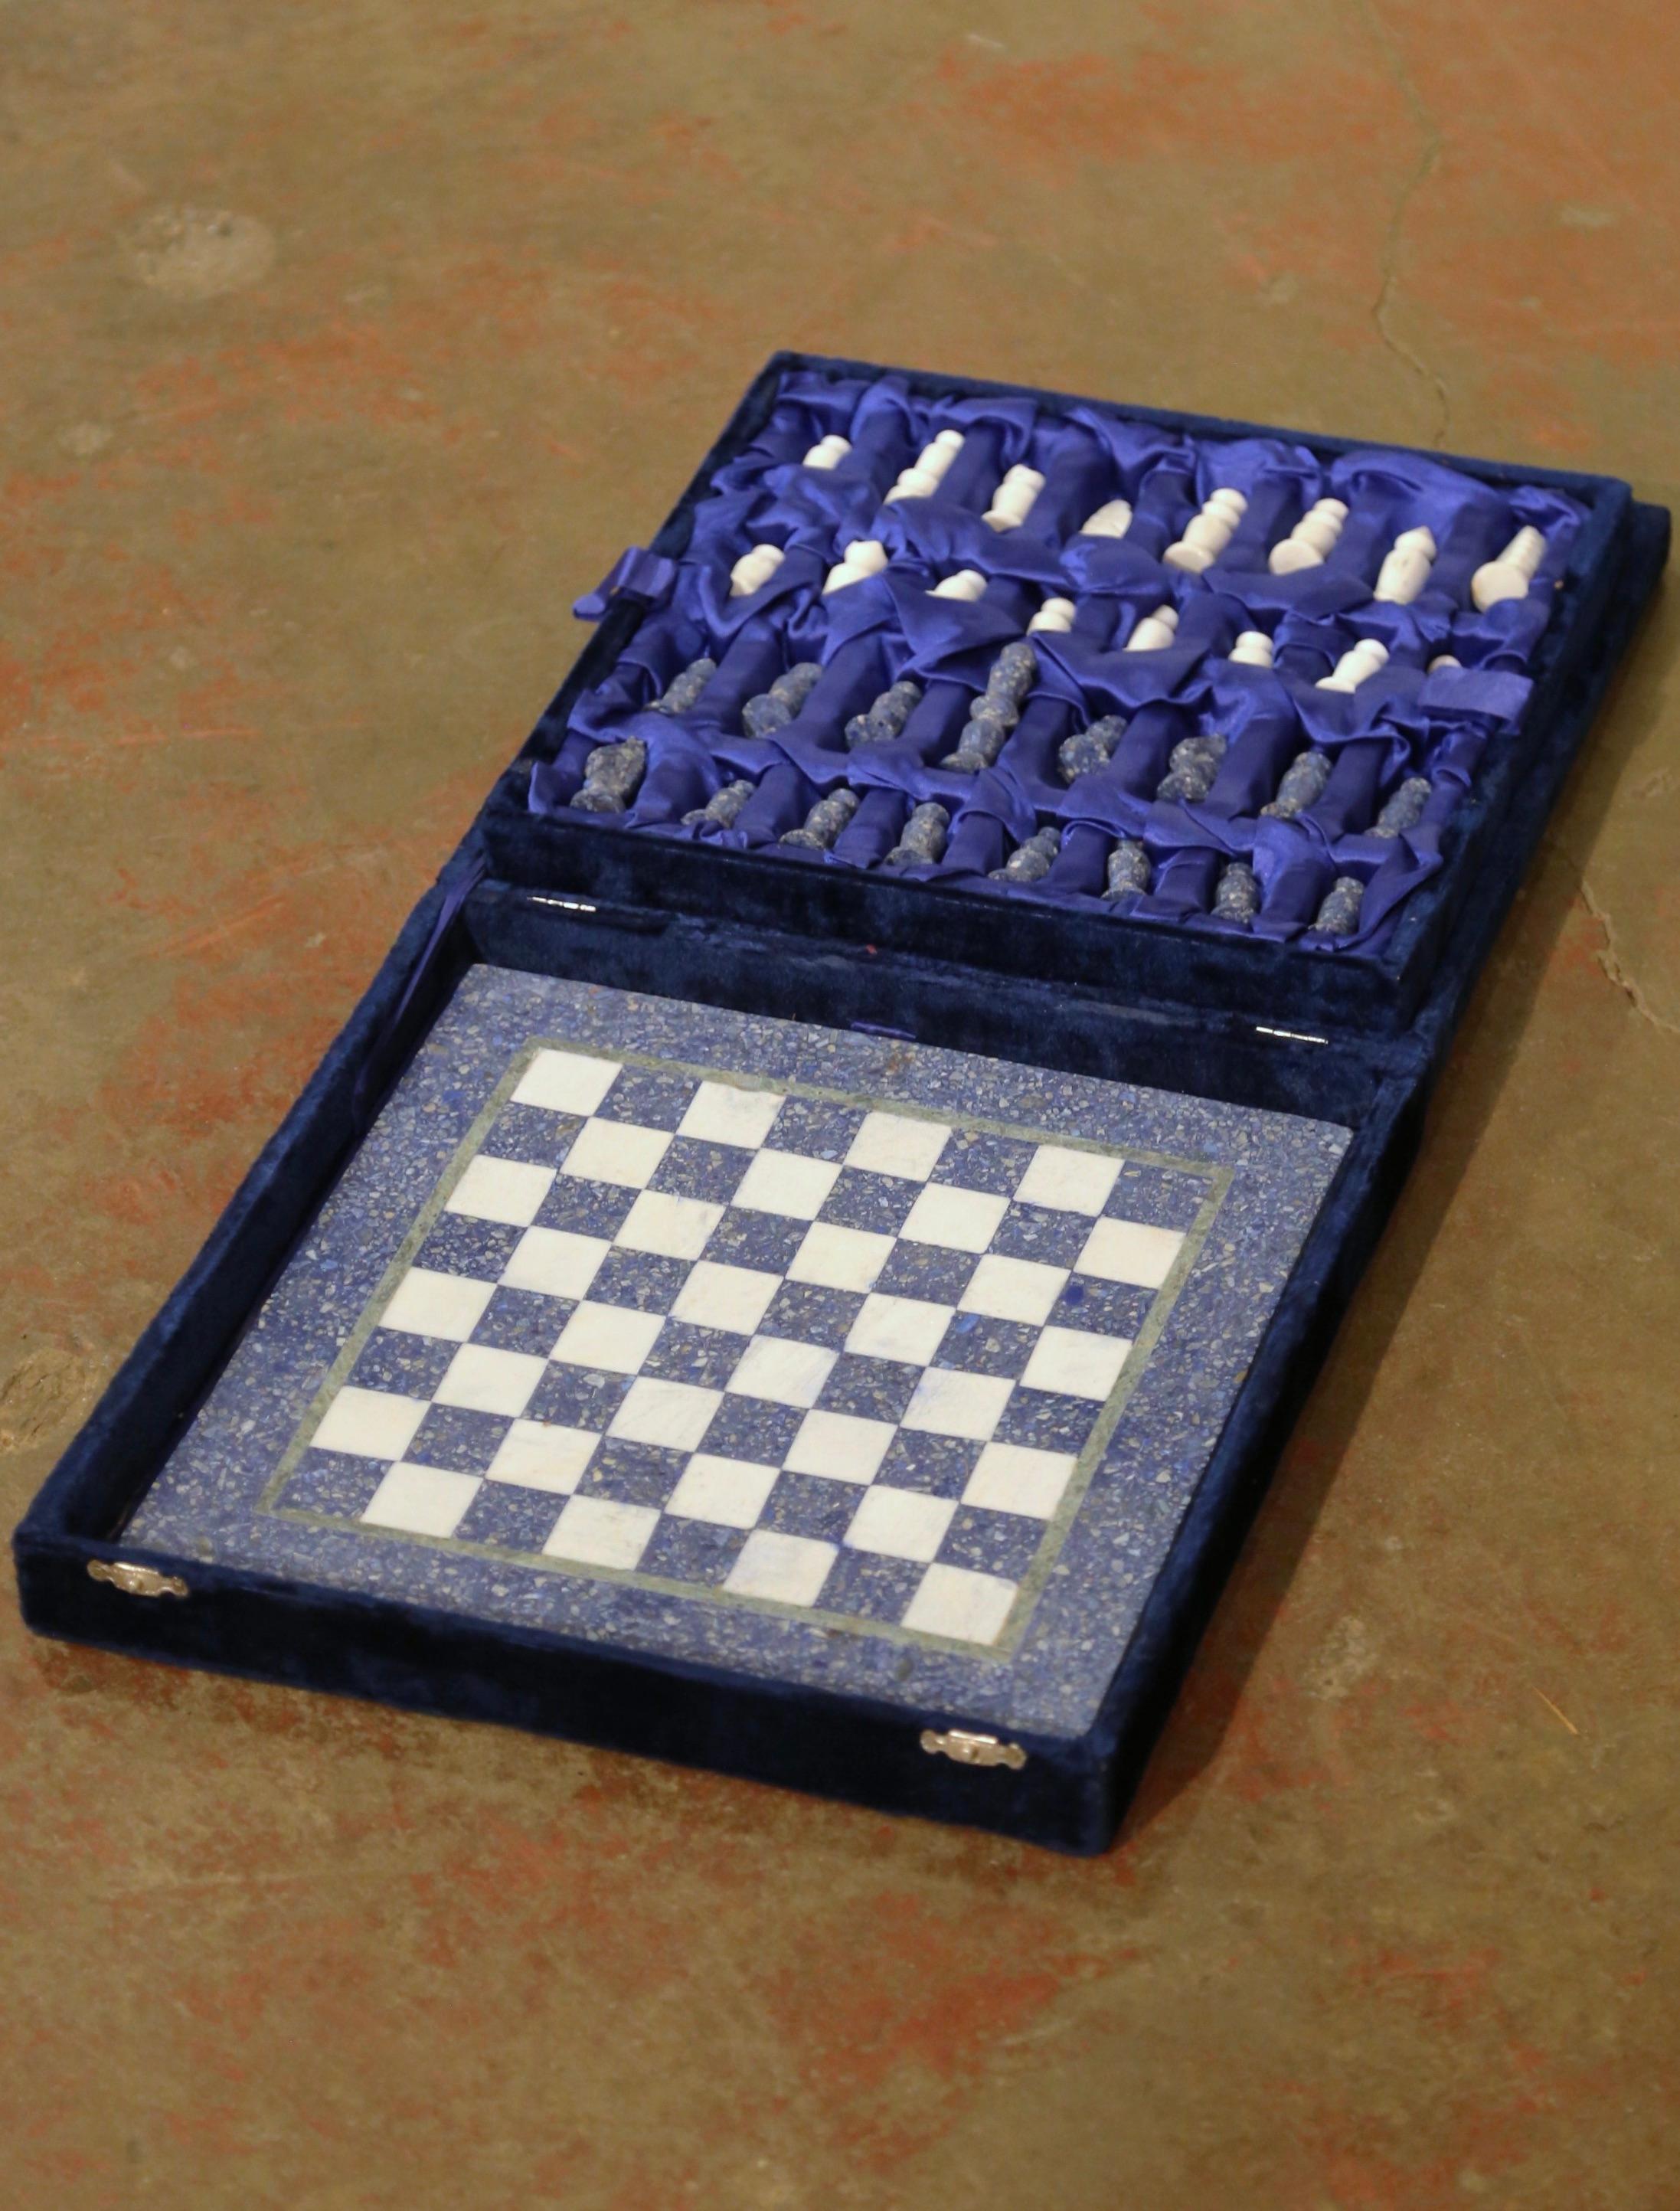 Cet ensemble complet est habilement fabriqué à la main, avec une lourde planche d'échecs à carreaux bleus et blancs avec un bord vert olive et trente-deux figurines en pierre. La moitié de ces pièces est d'un beau bleu congloméré, tandis que l'autre